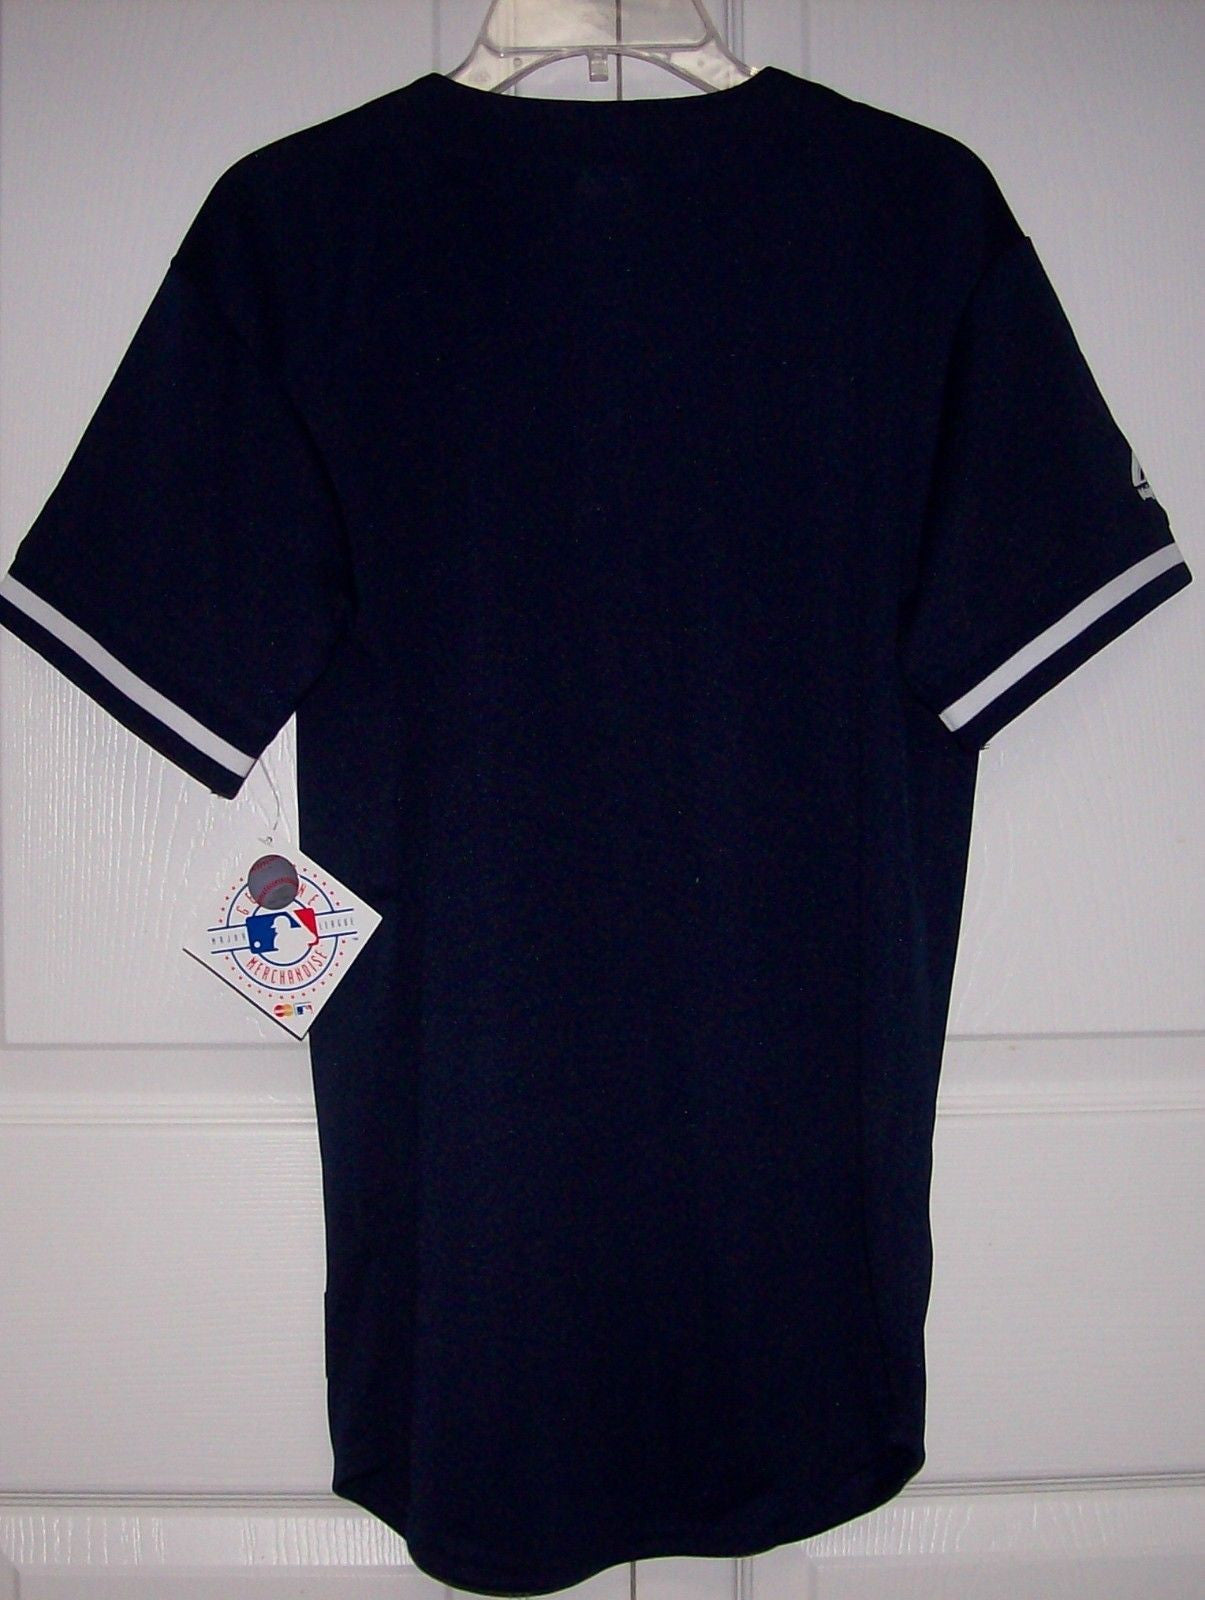 18) ADIDAS New York NY Yankees mlb Baseball Jersey Shirt YOUTH